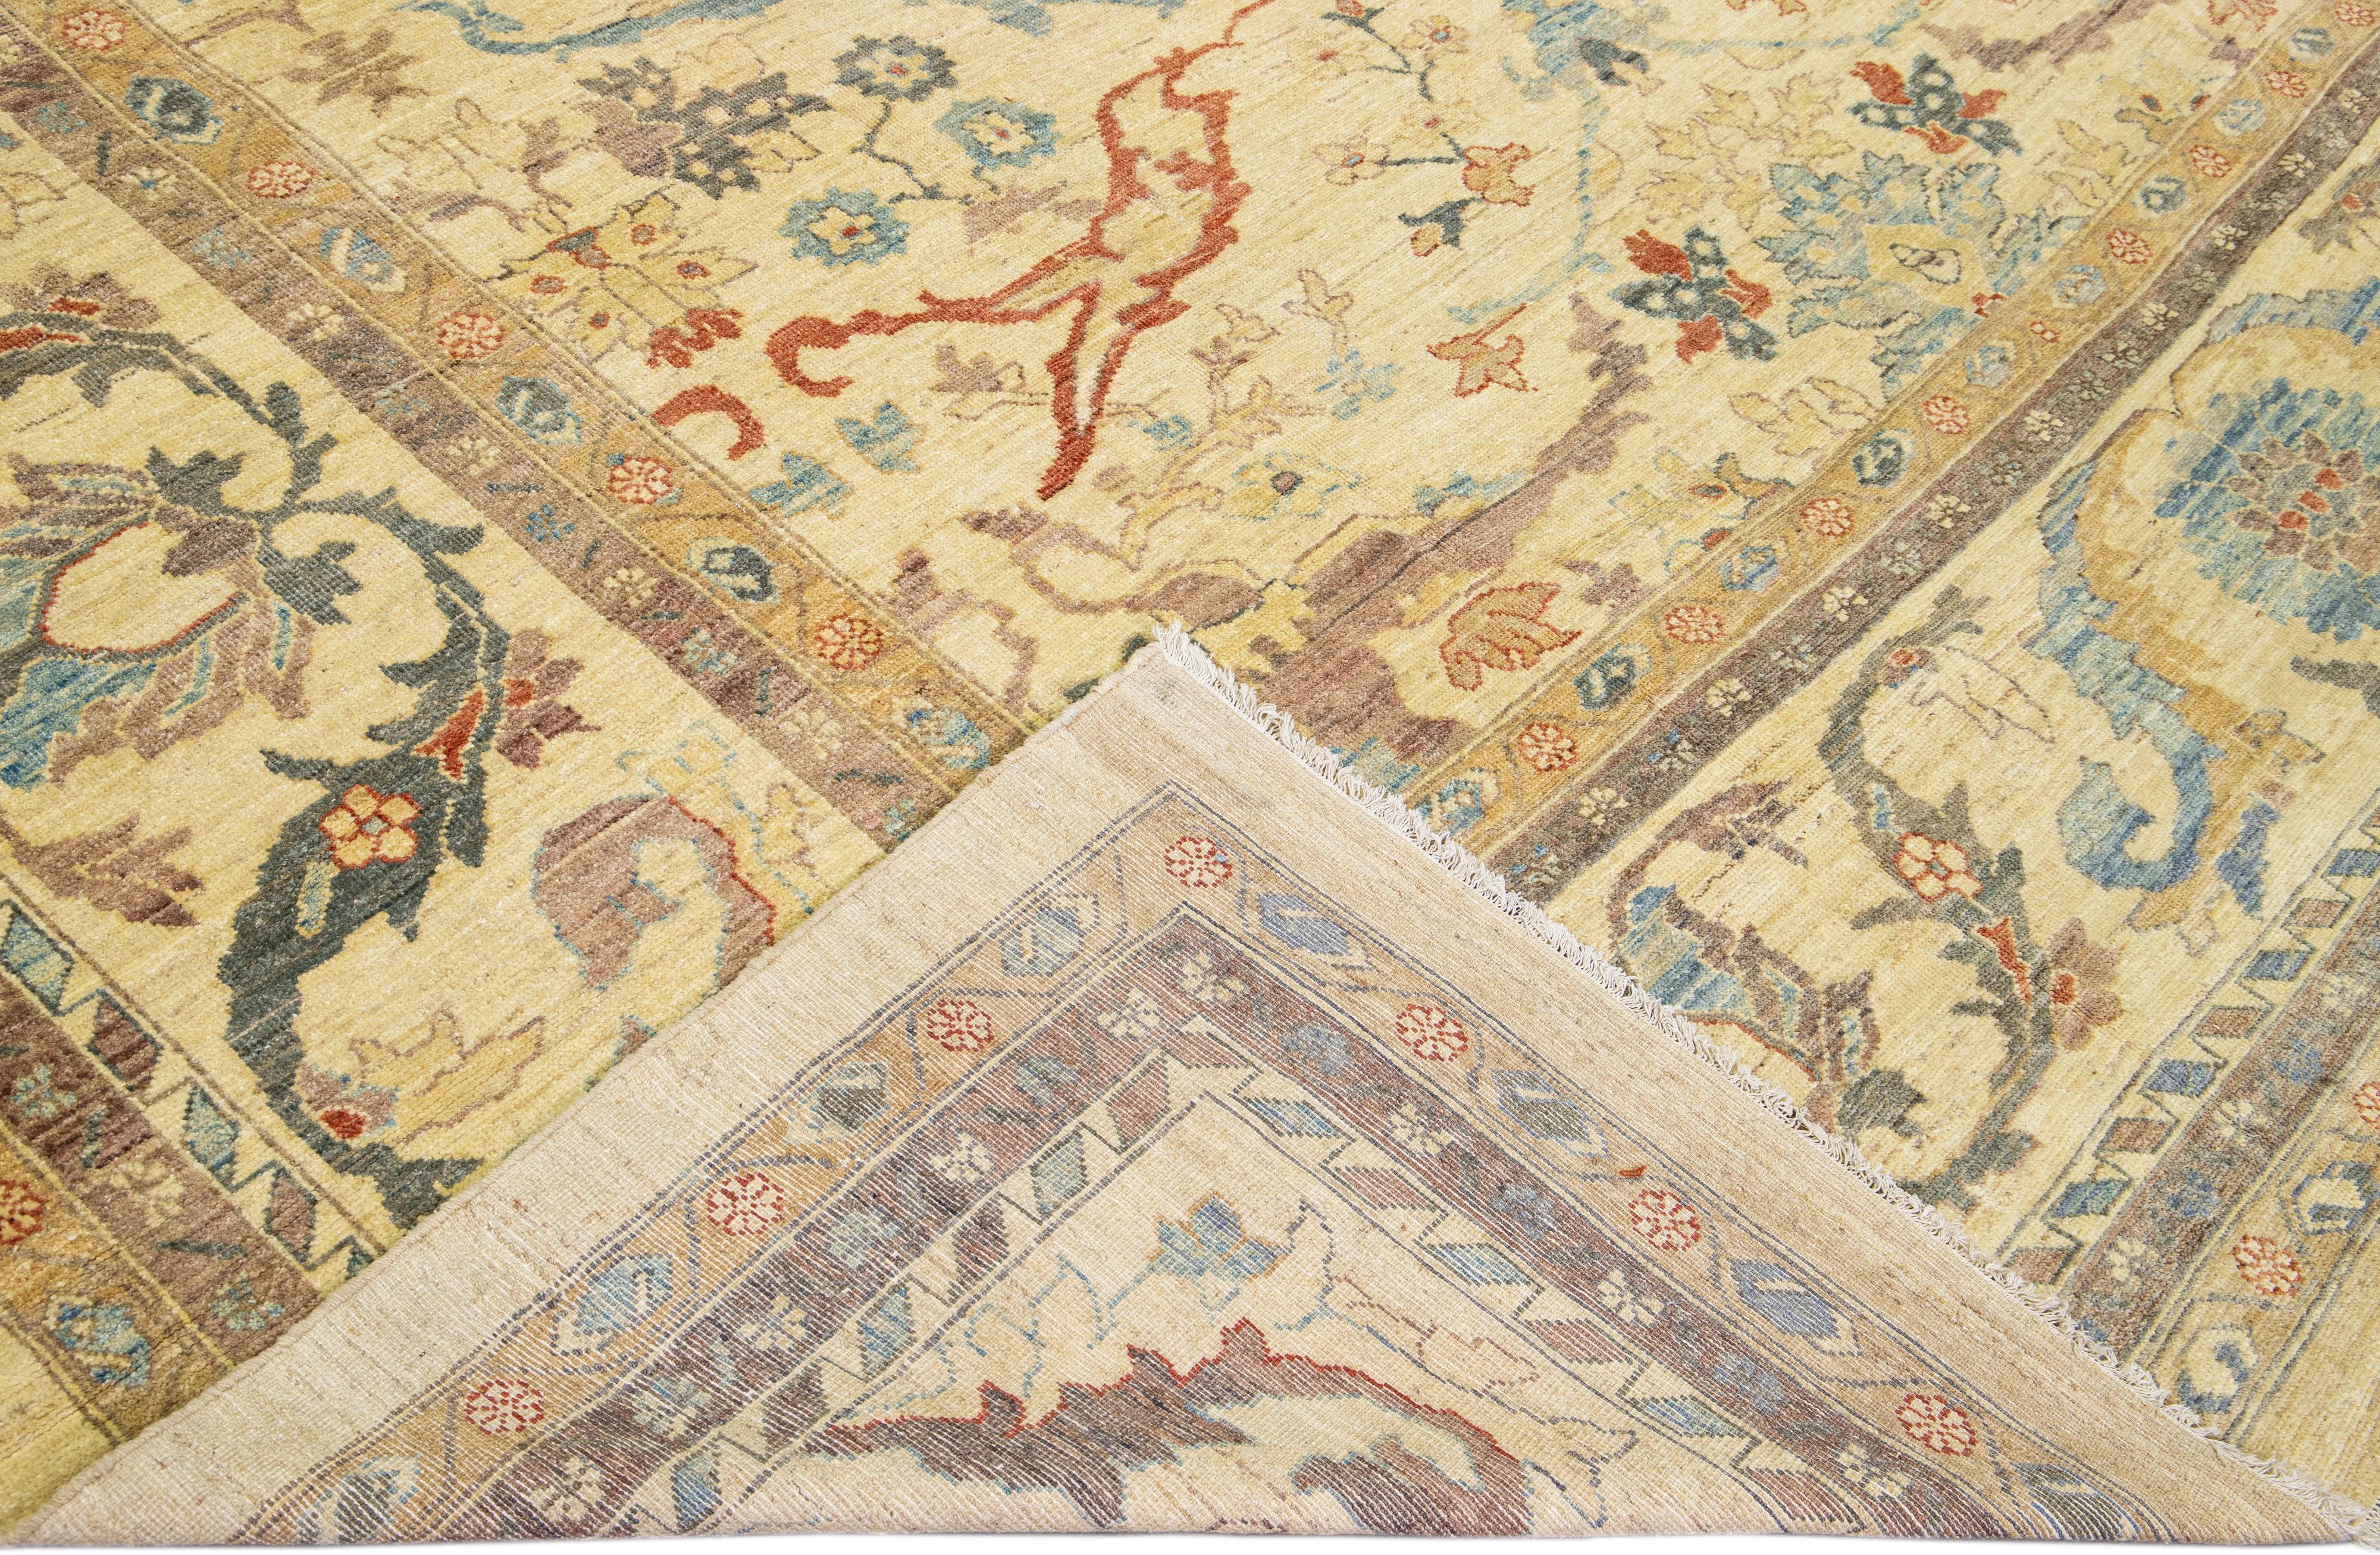 Schöner moderner Sultanabad-Teppich aus handgeknüpfter Wolle mit beigem Feld. Dieser Sultanabad-Teppich hat braune, goldgelbe und blaue Akzente in einem wunderschönen, klassischen Blumenmuster.

Dieser Teppich misst: 13'5